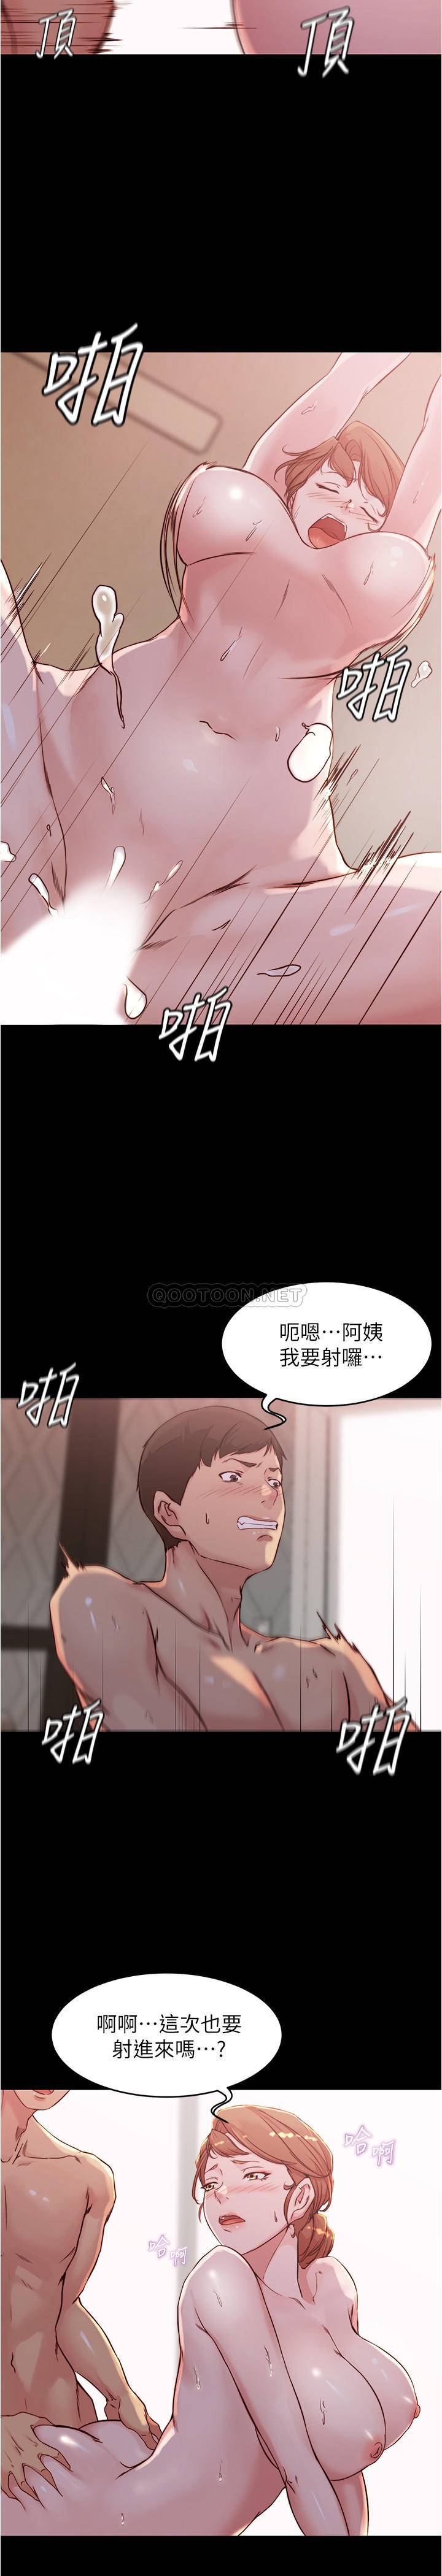 韩国污漫画 小褲褲筆記 第30话 - 忘不掉的强烈快感 18